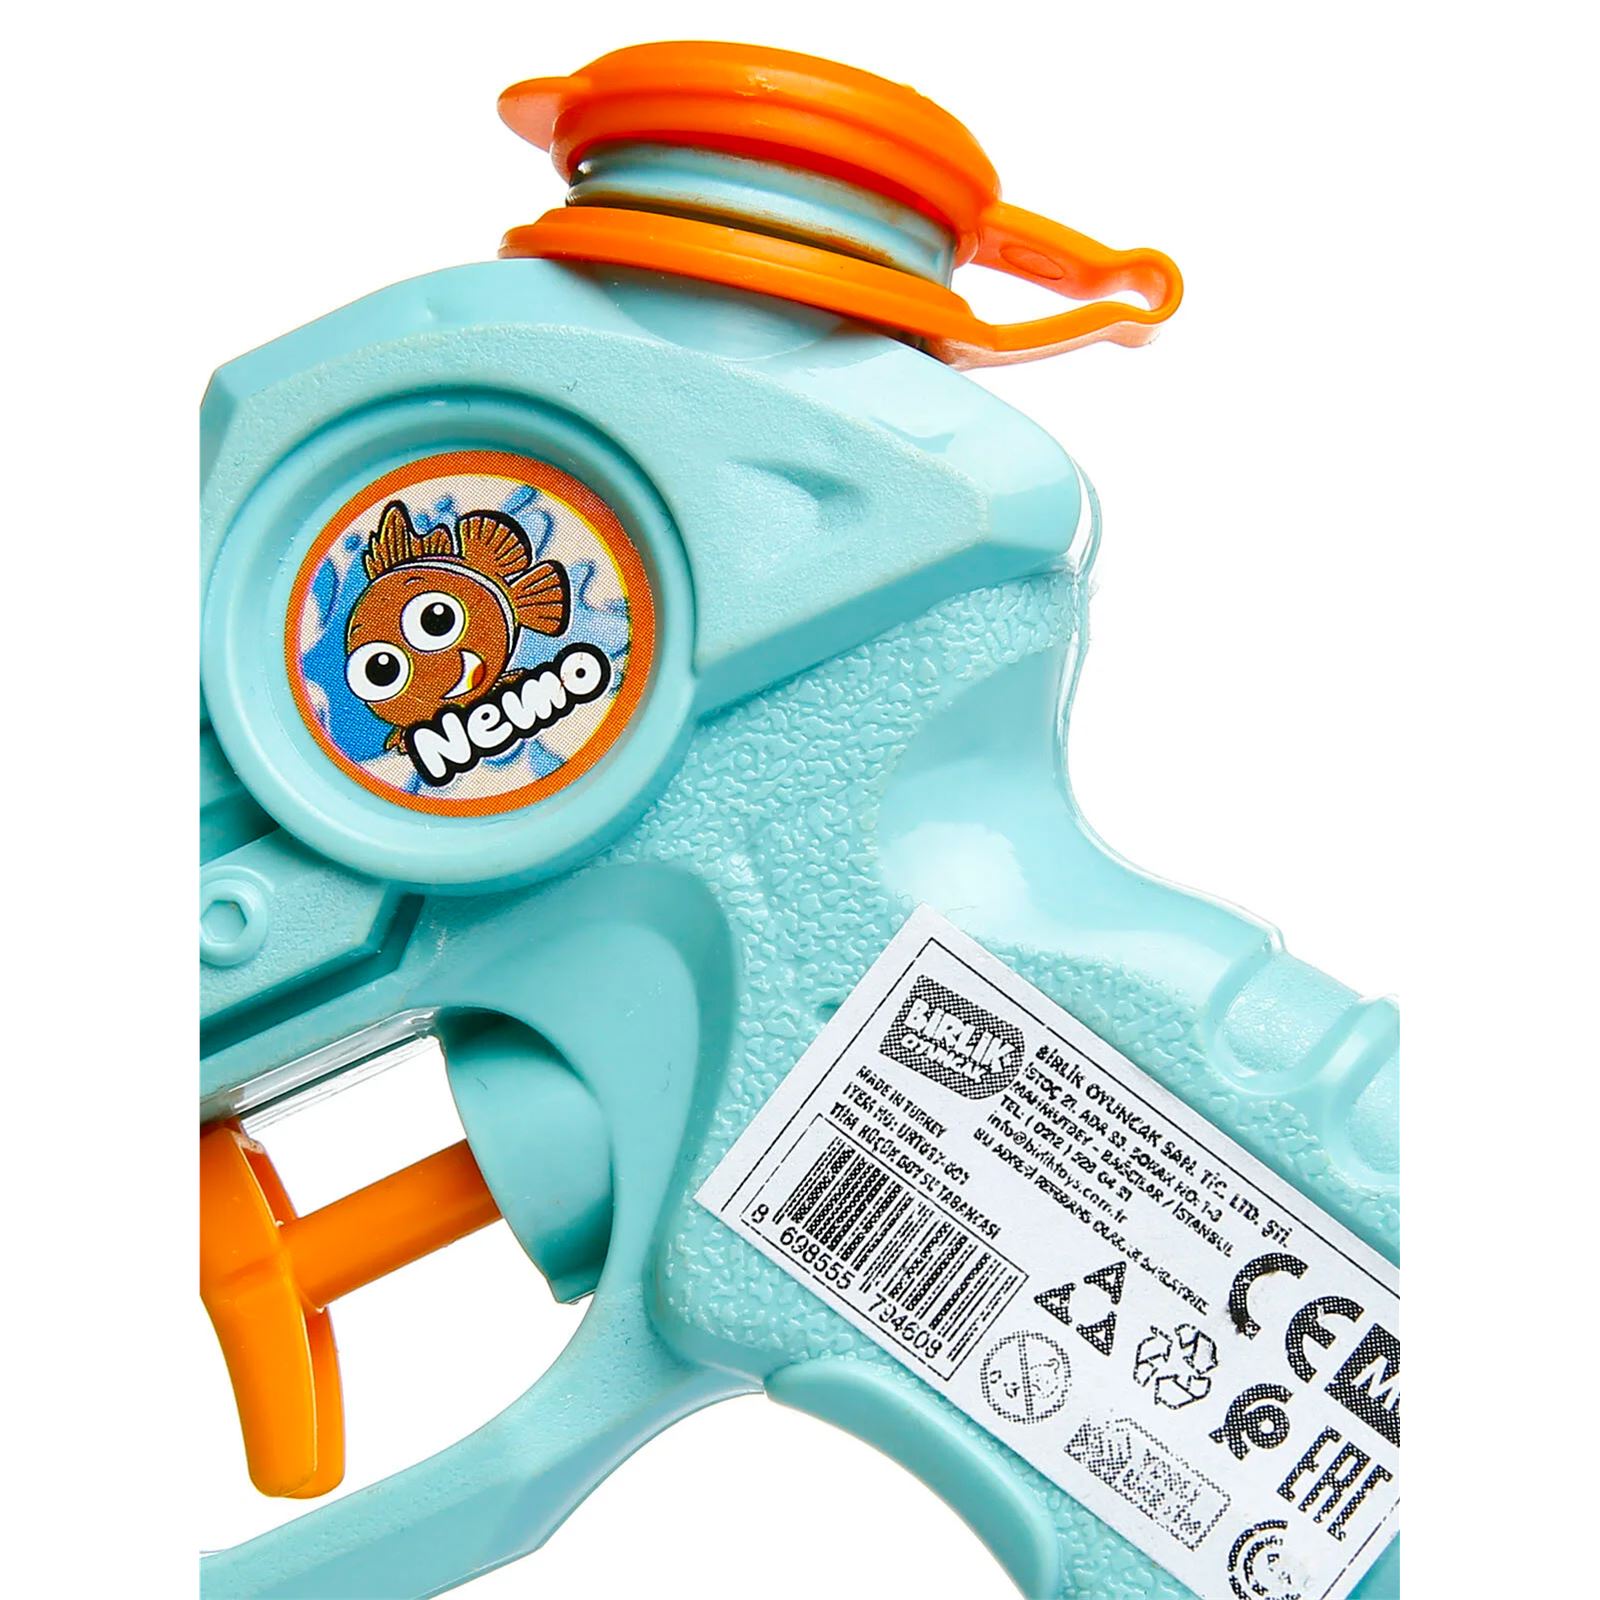 Birlik Oyuncak Timm Water Blaster Nemo Küçük Boy Su Tabancası Sarı